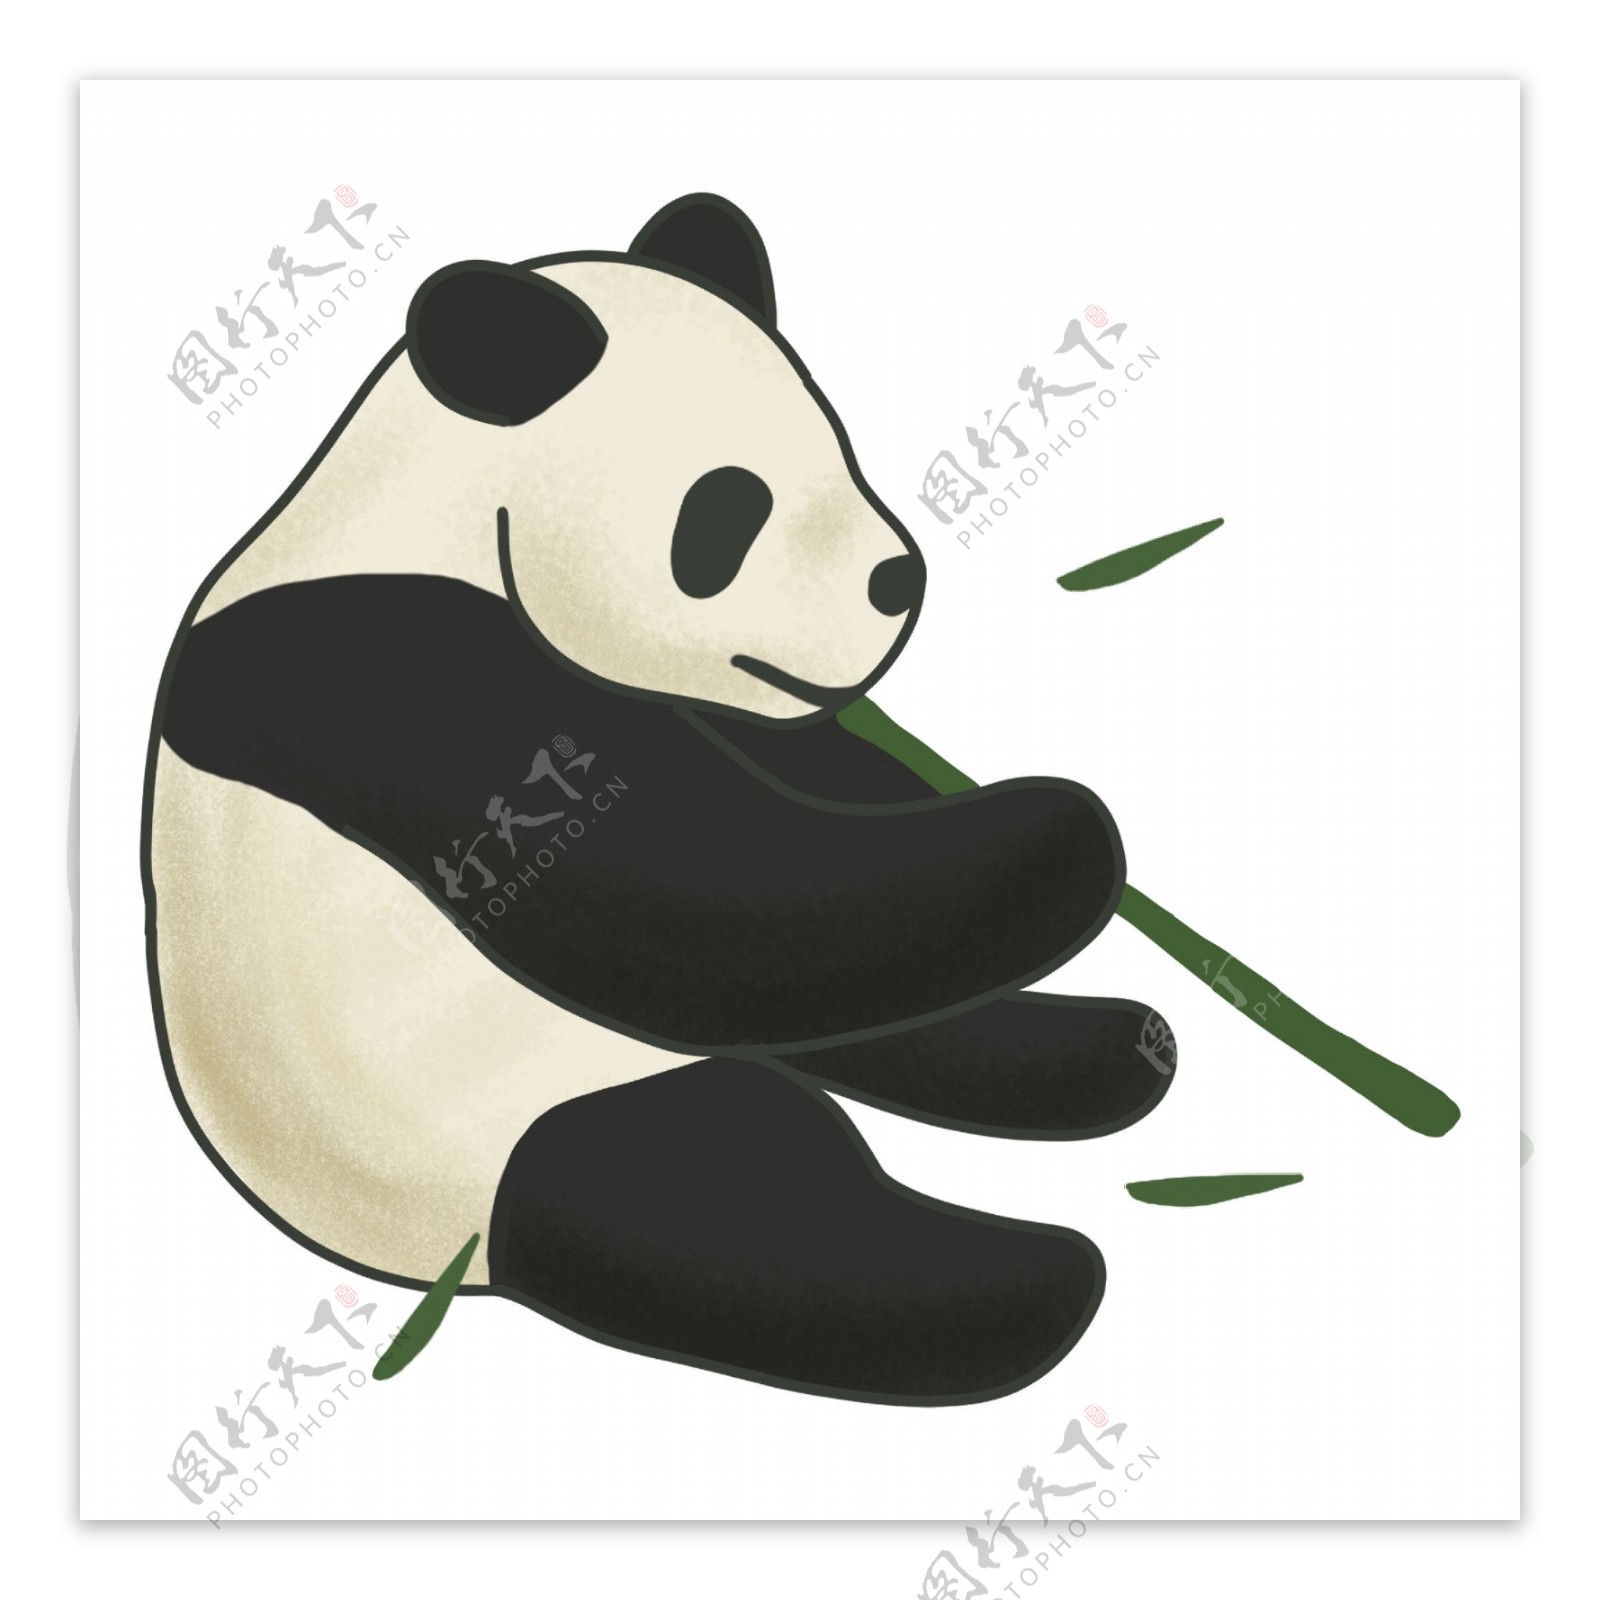 坐着吃竹子的可爱胖熊猫